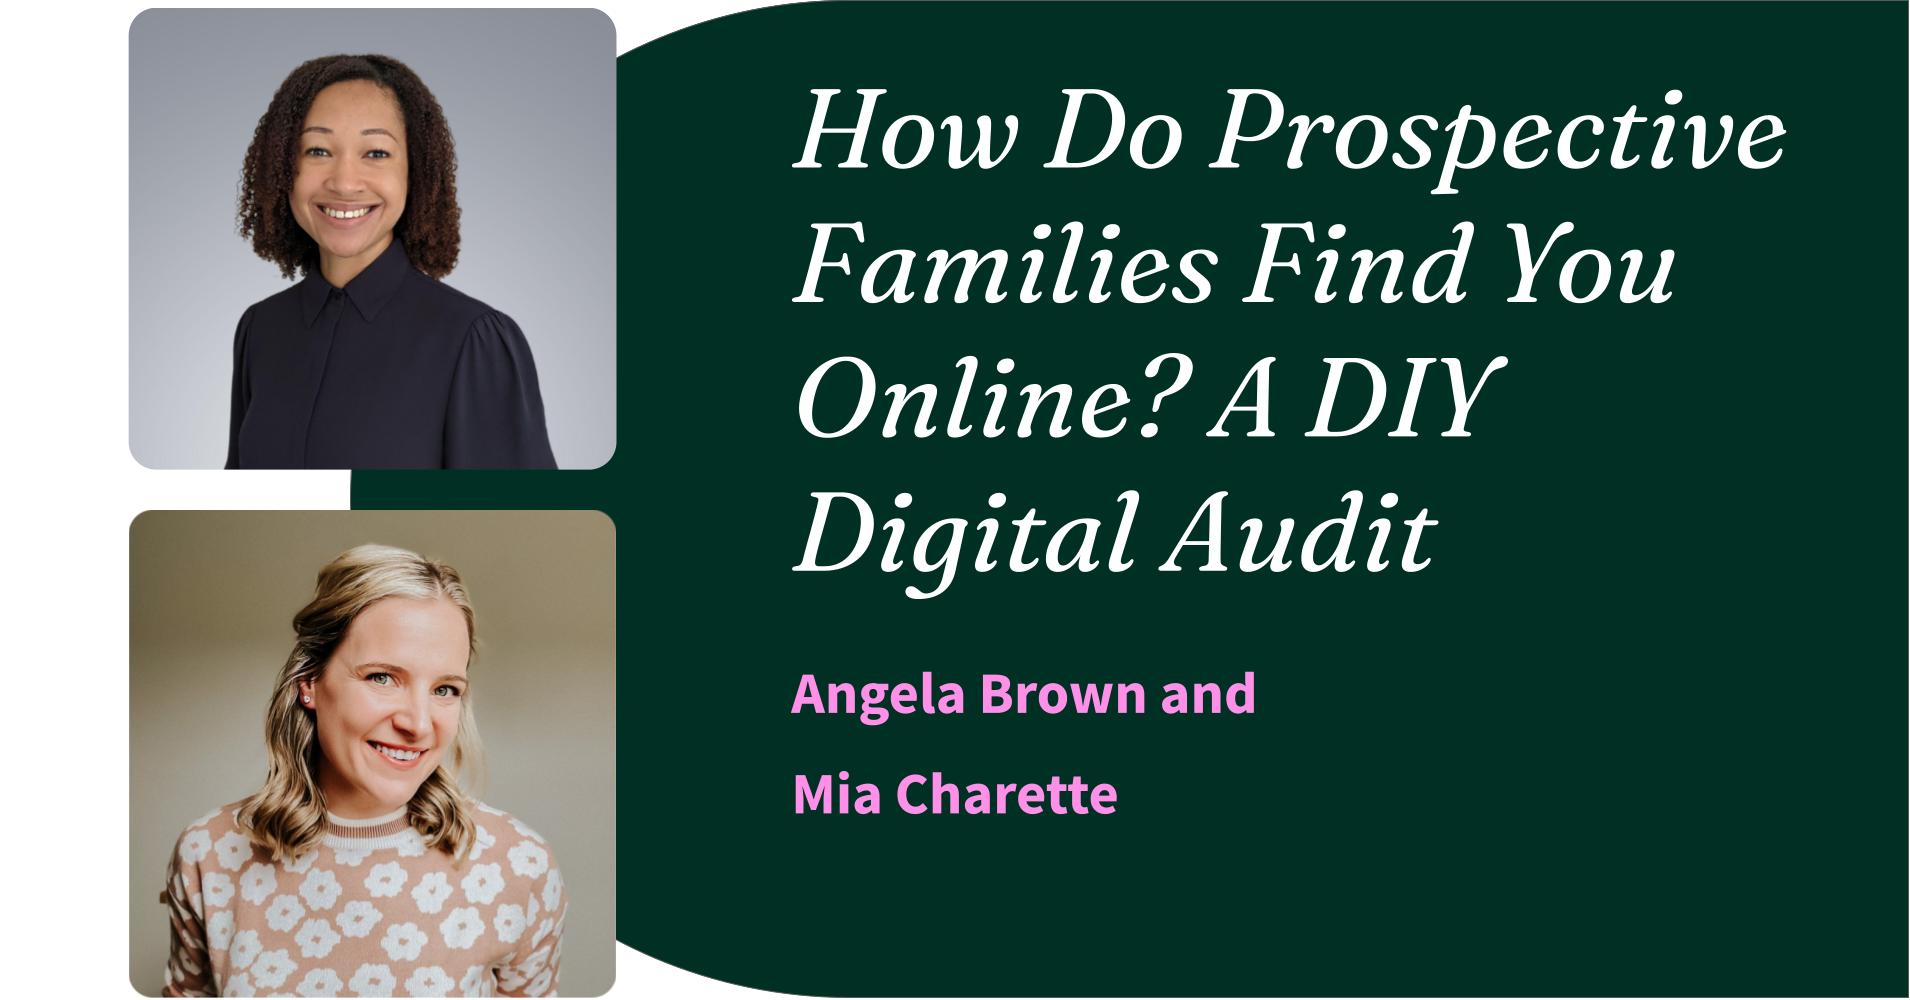 How Do Prospective Families Find You Online? A DIY Digital Audit